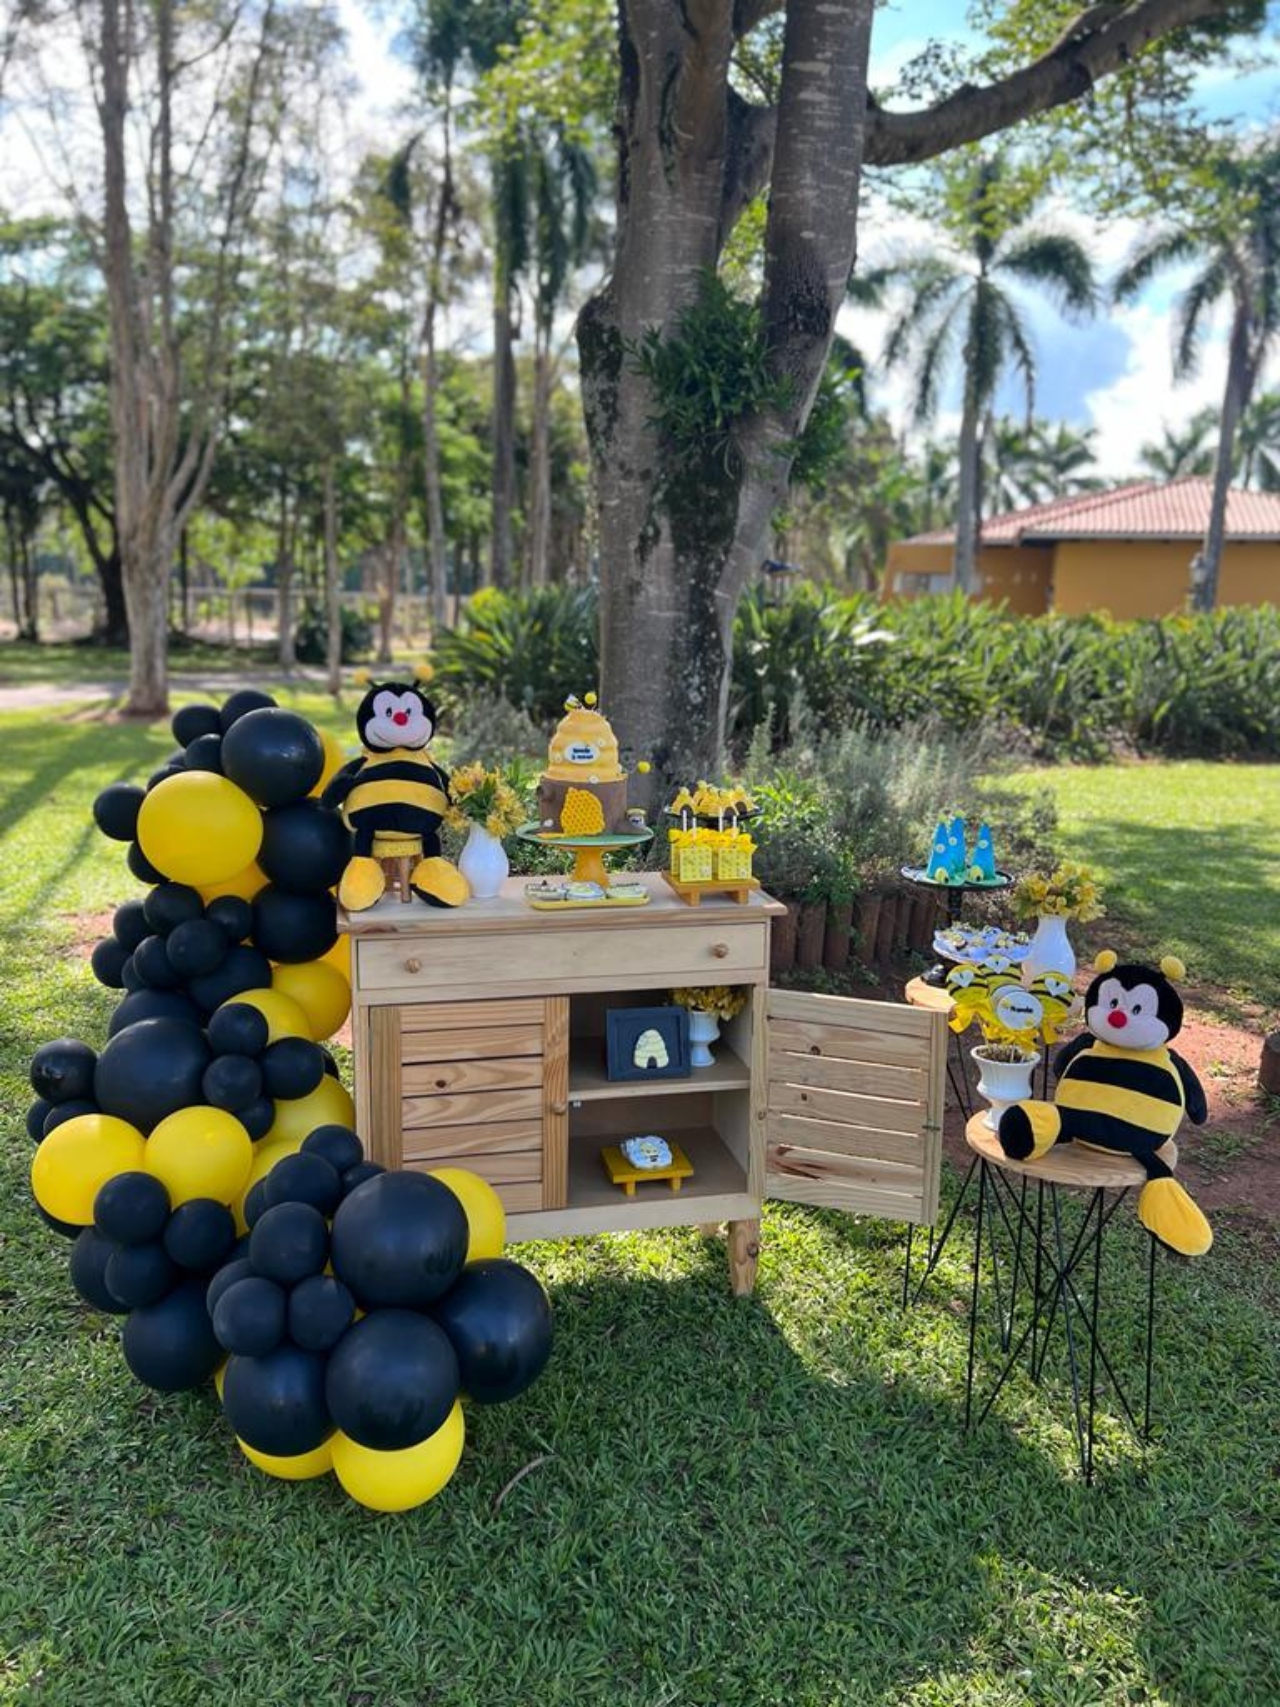 Decoração com tema de abelha da festa do 3º mesversário da pequena Fernanda - Crédito: Cauê Garcia / CG Comunicação